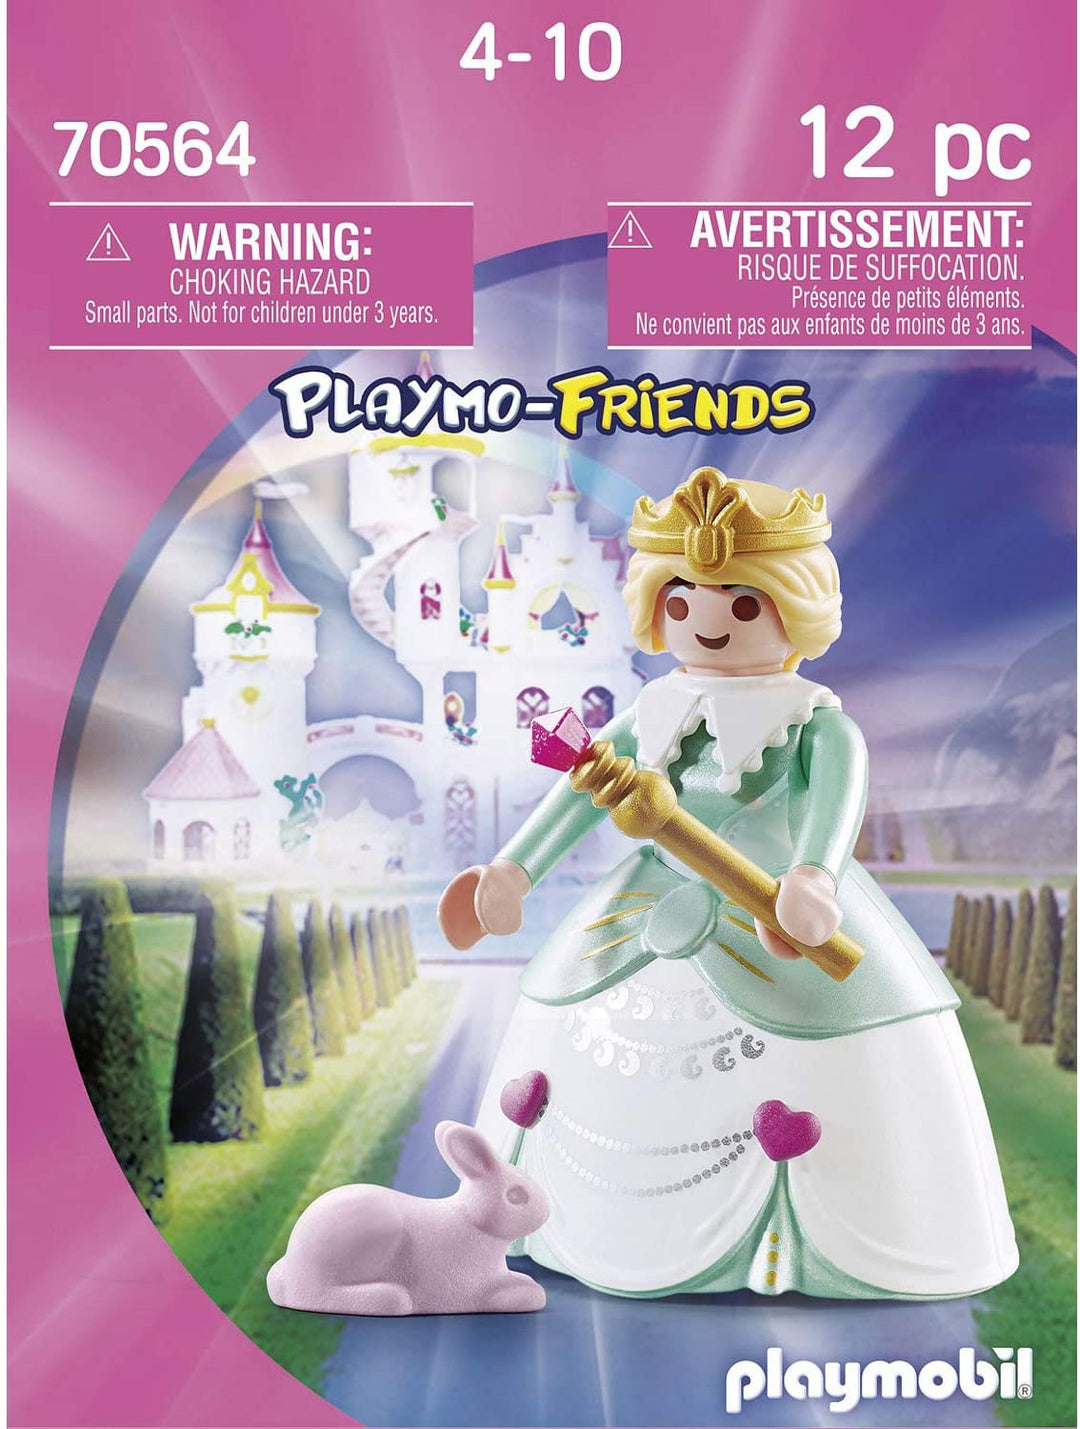 Playmobil 70564 Princesse Magique Playmo-Friends, pour Enfants à partir de 4 ans